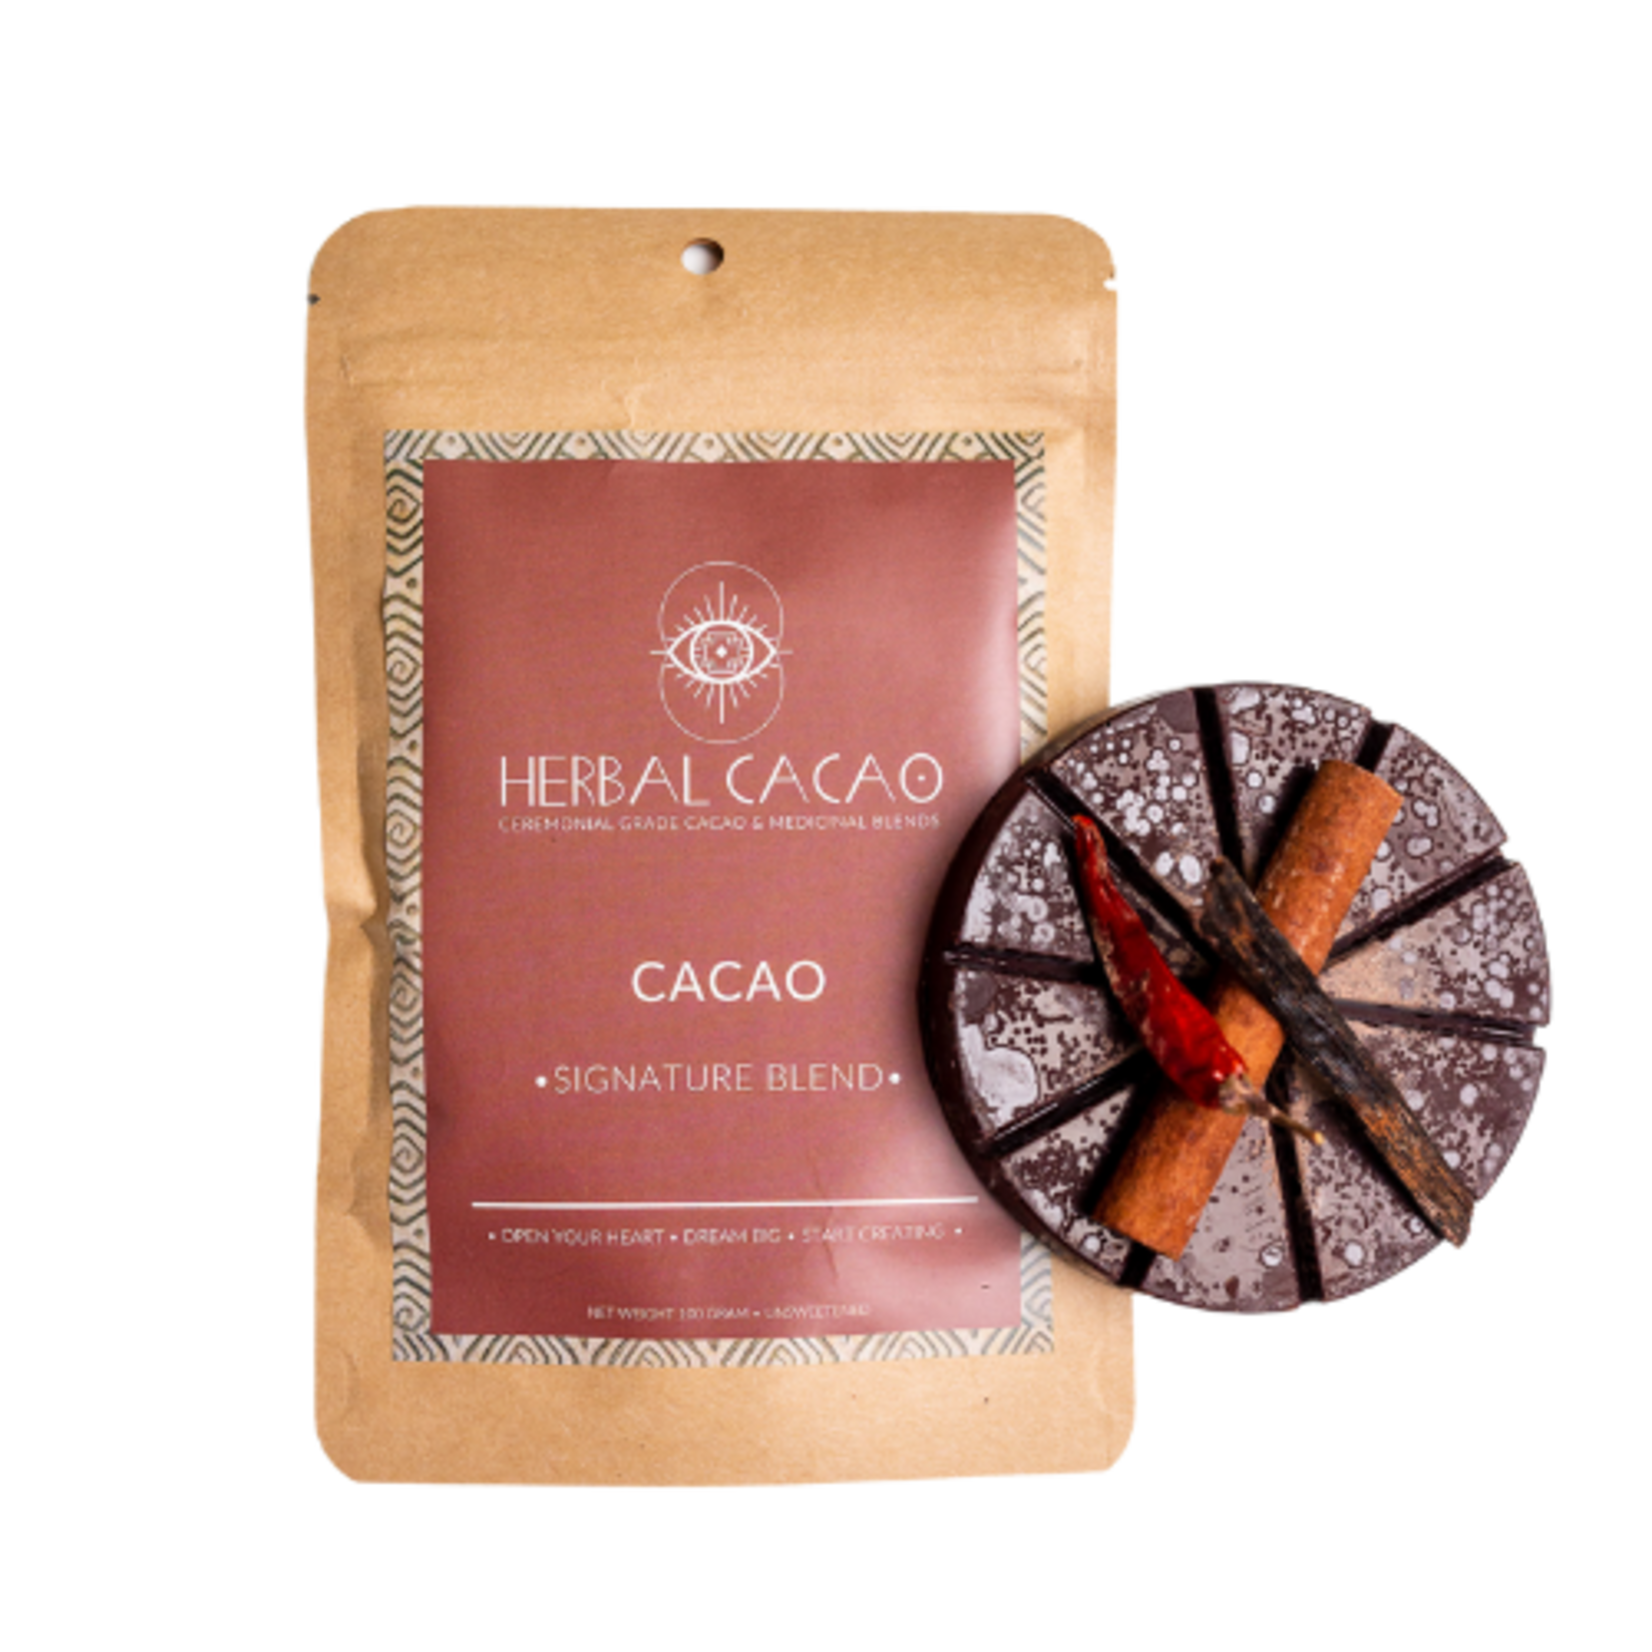 Herbal Cacao CEREMONIAL GRADE CACAO "Signature Blend"